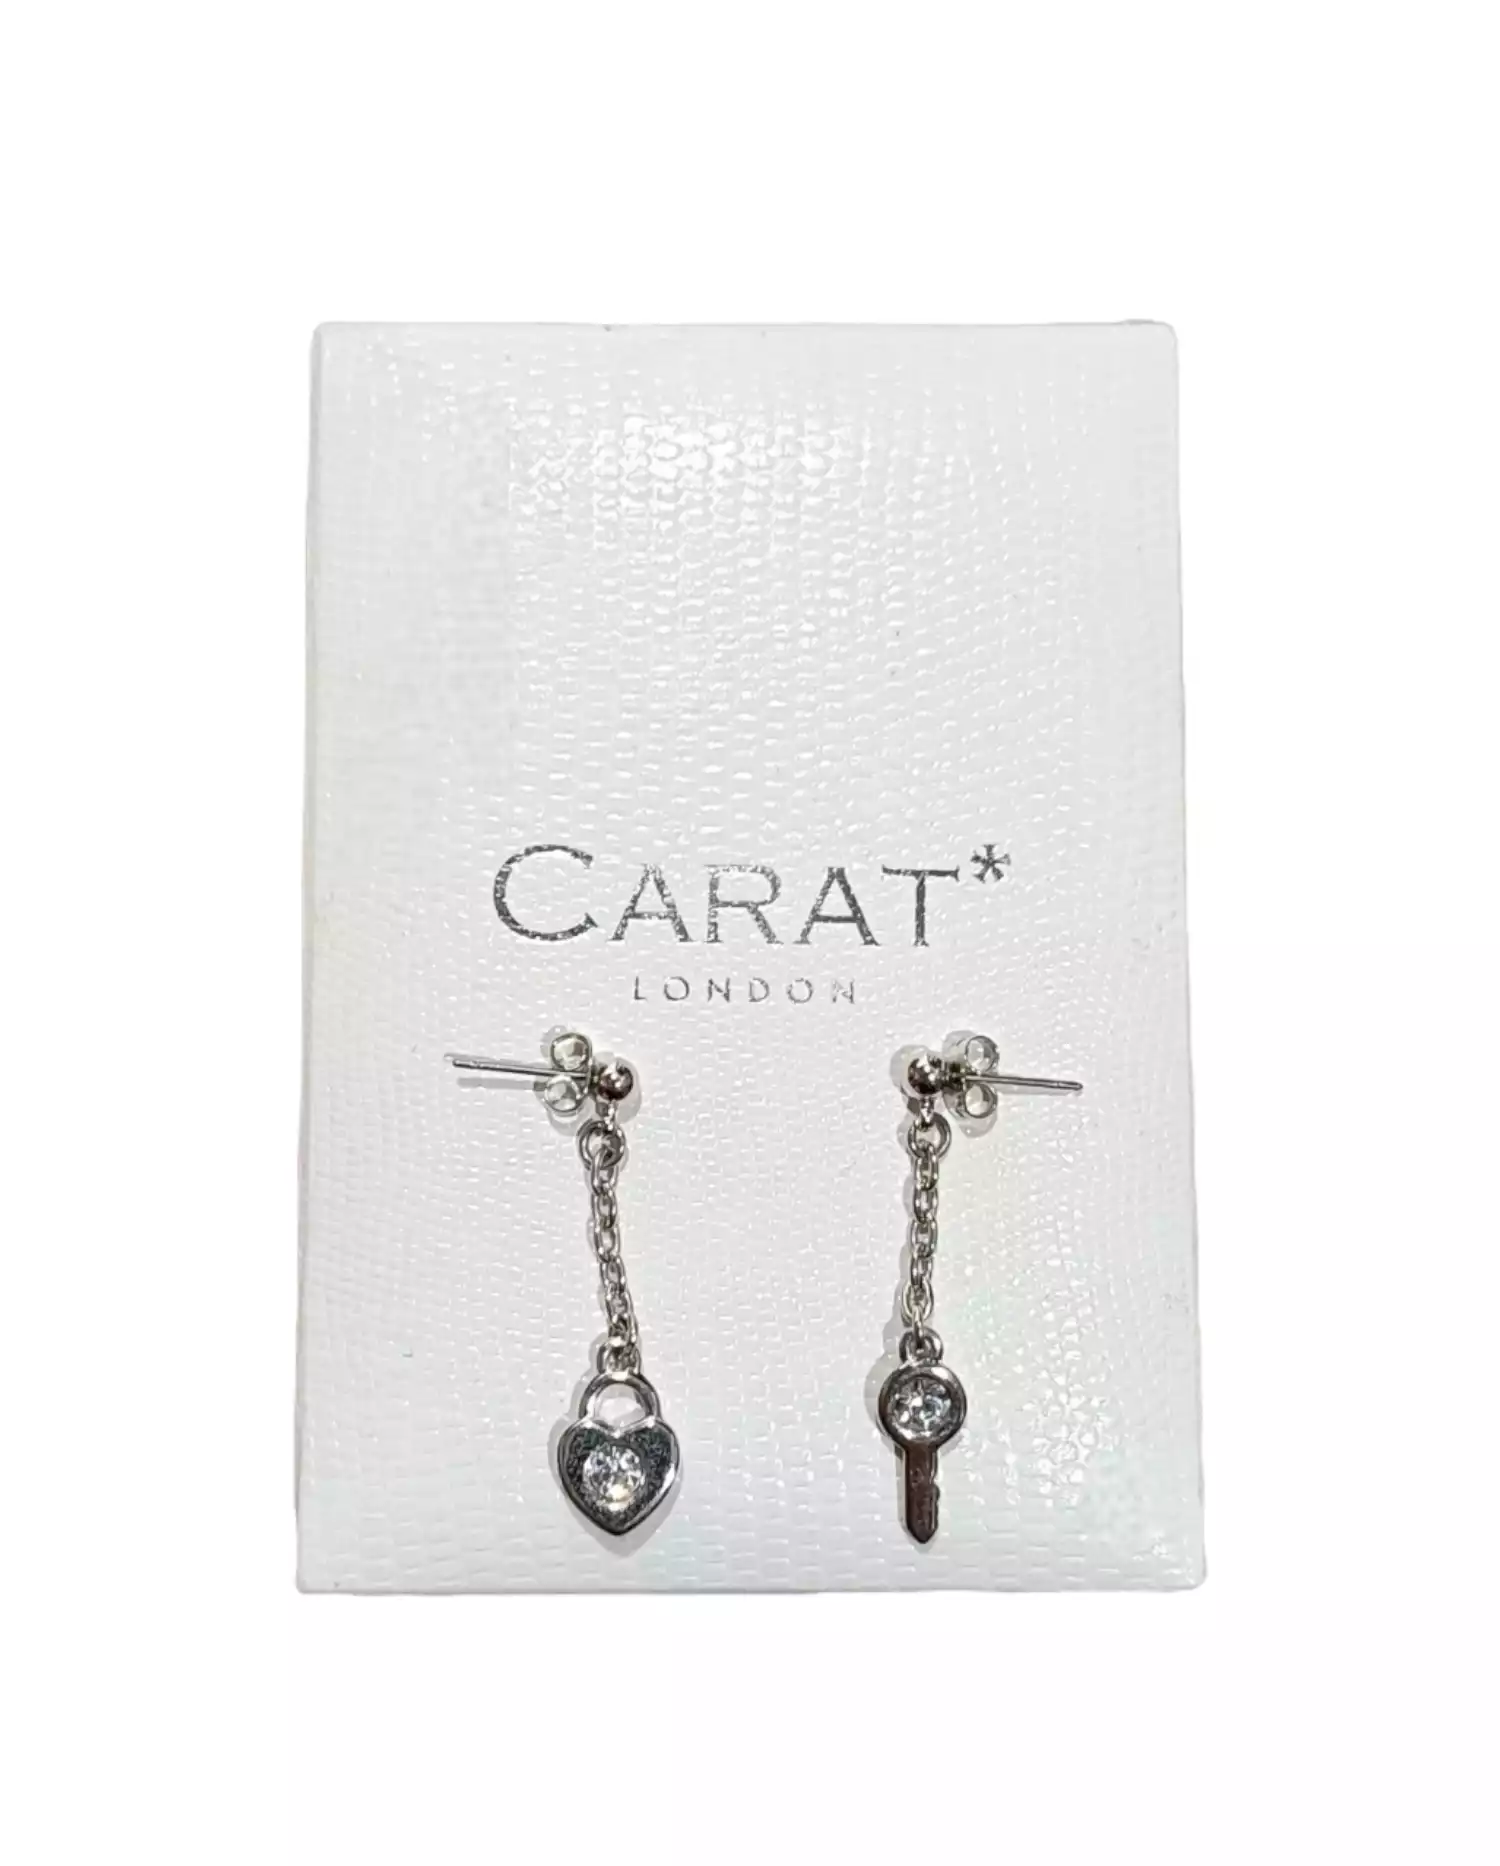 Earrings by Carat London